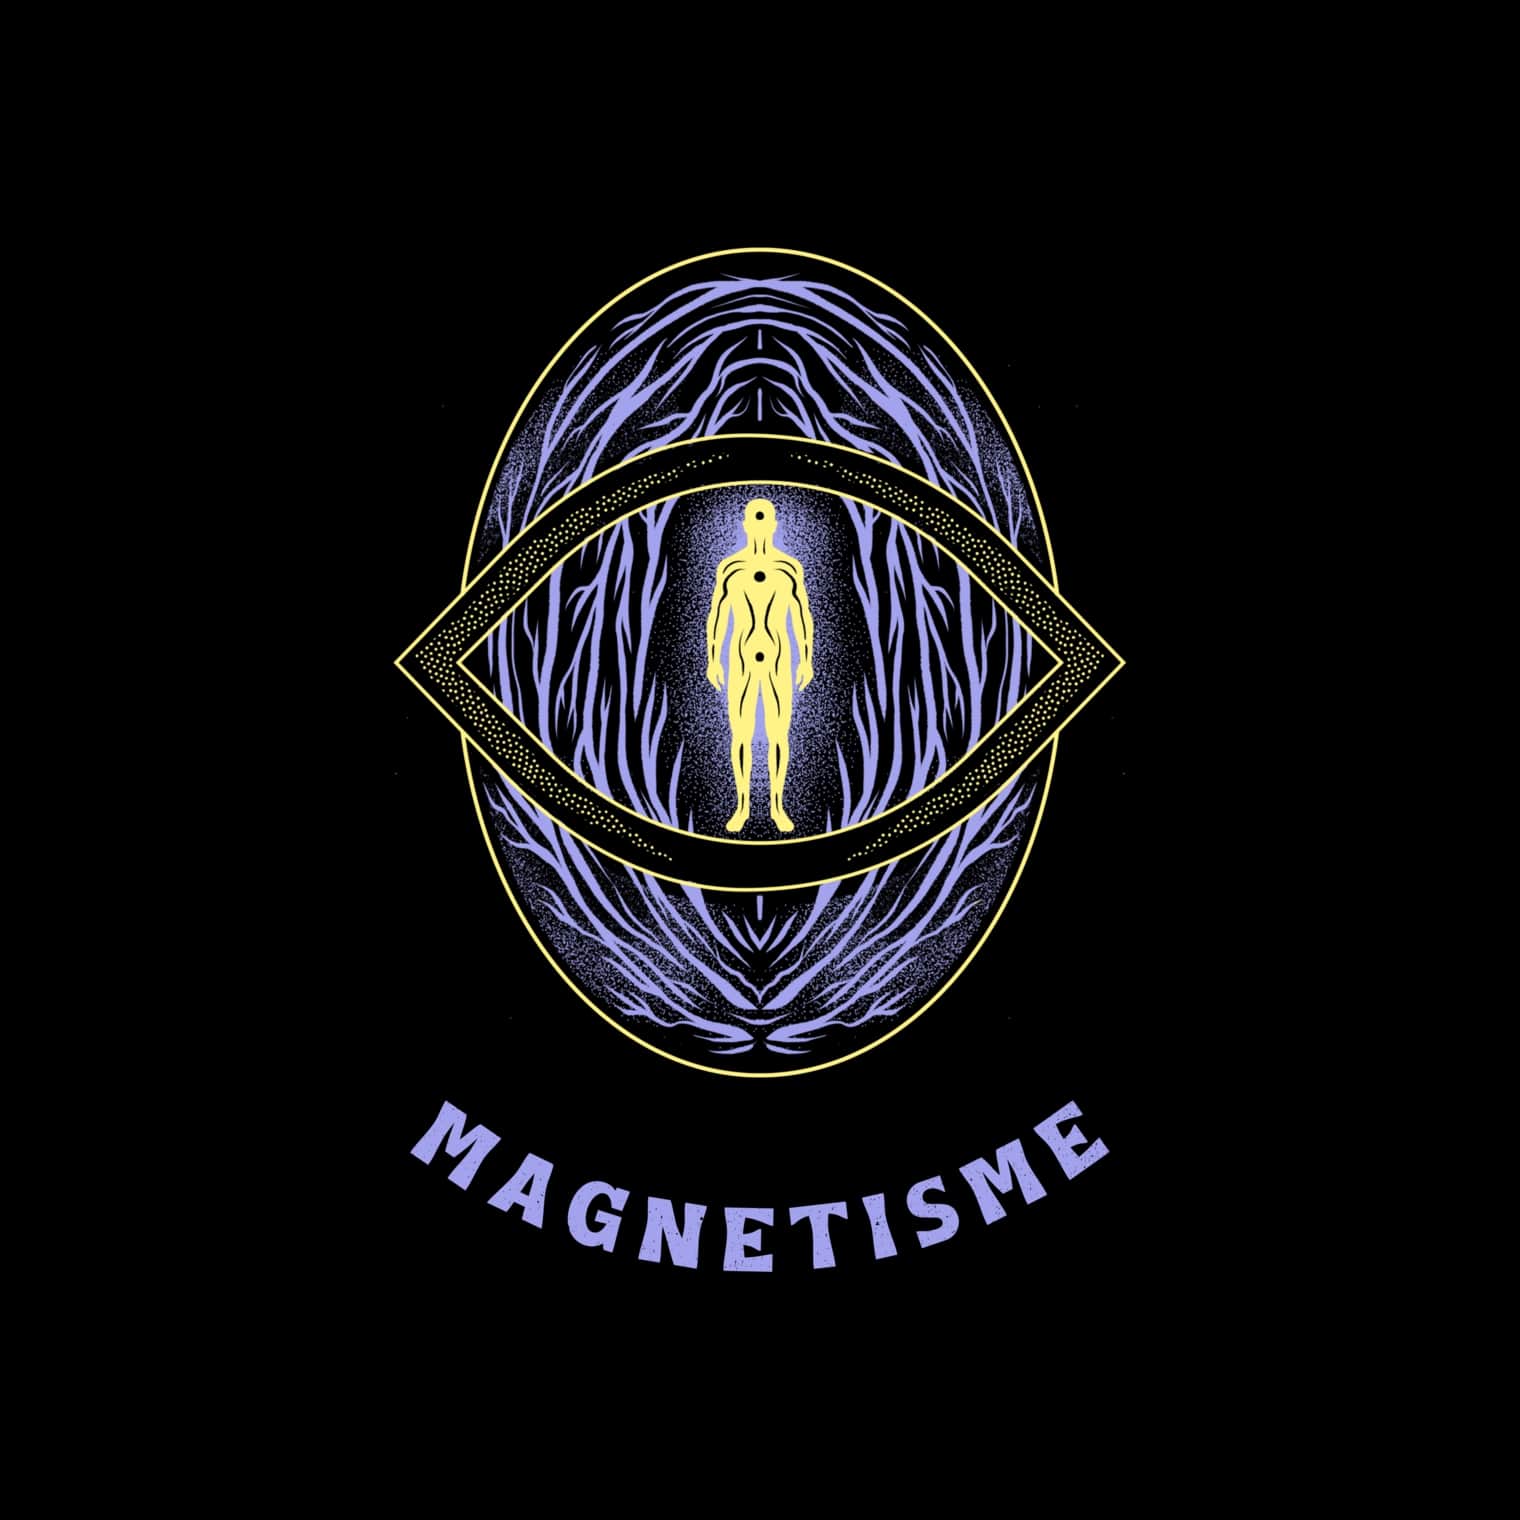 Service séance de magnétisme par un magnétiseur à Bruxelles en Belgique en ligne par téléphone gratuit